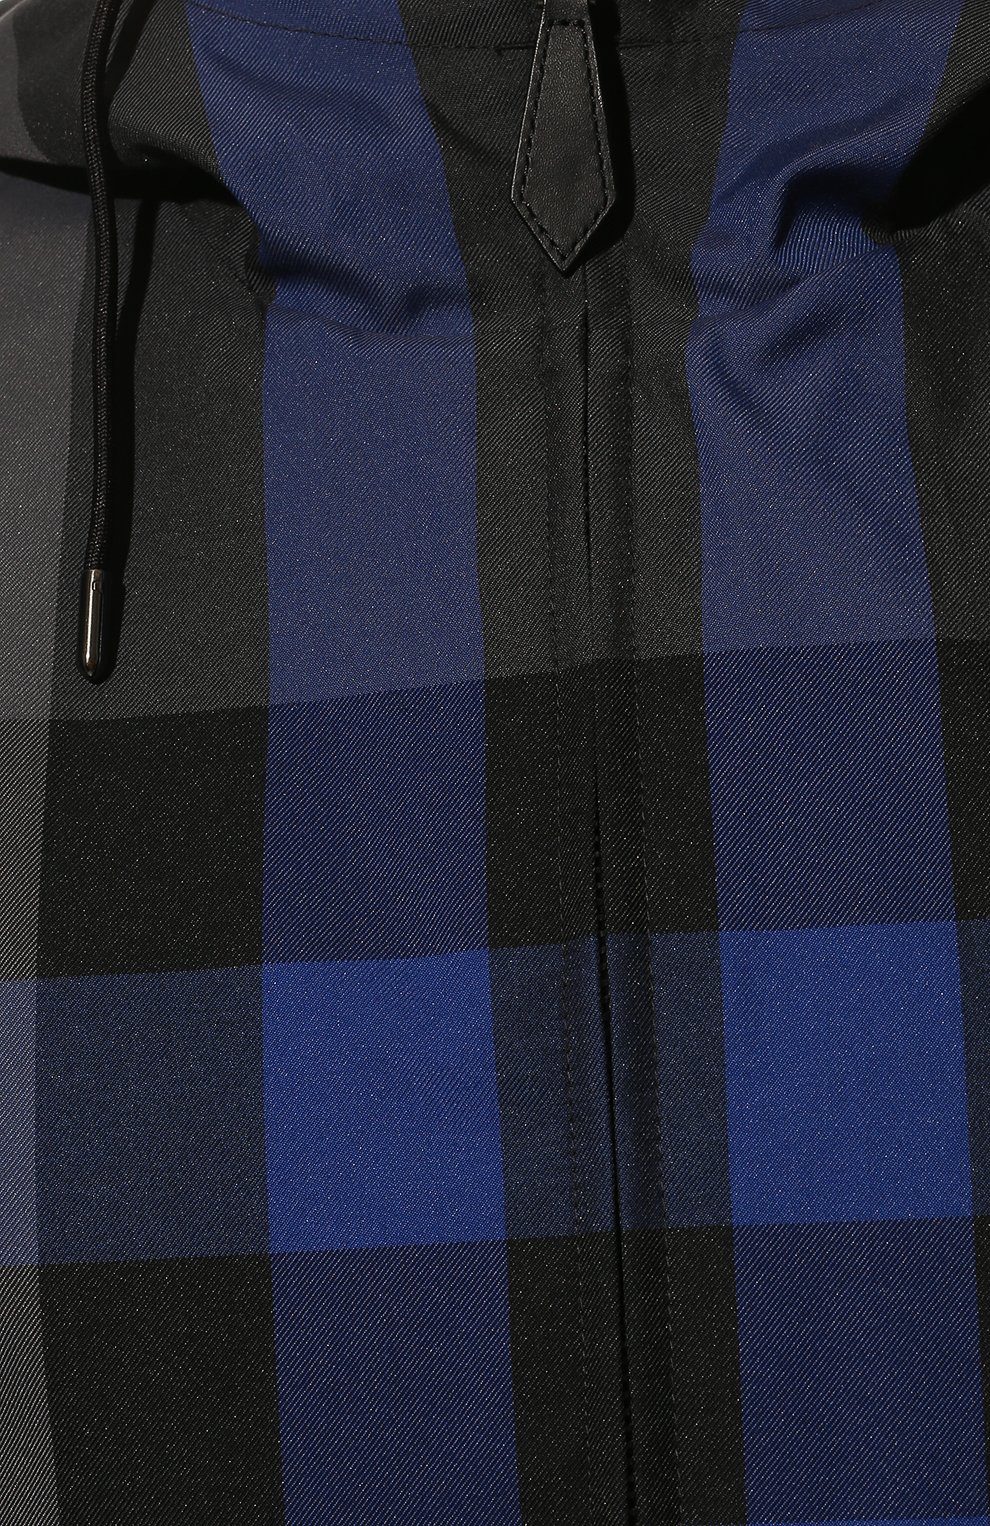 Мужская куртка BURBERRY темно-синего цвета, арт. 8047825 | Фото 5 (Кросс-КТ: Куртка, Ветровка; Рукава: Длинные; Материал внешний: Синтетический материал, Хлопок; Материал подклада: Синтетический материал; Длина (верхняя одежда): Короткие; Стили: Кэжуэл)